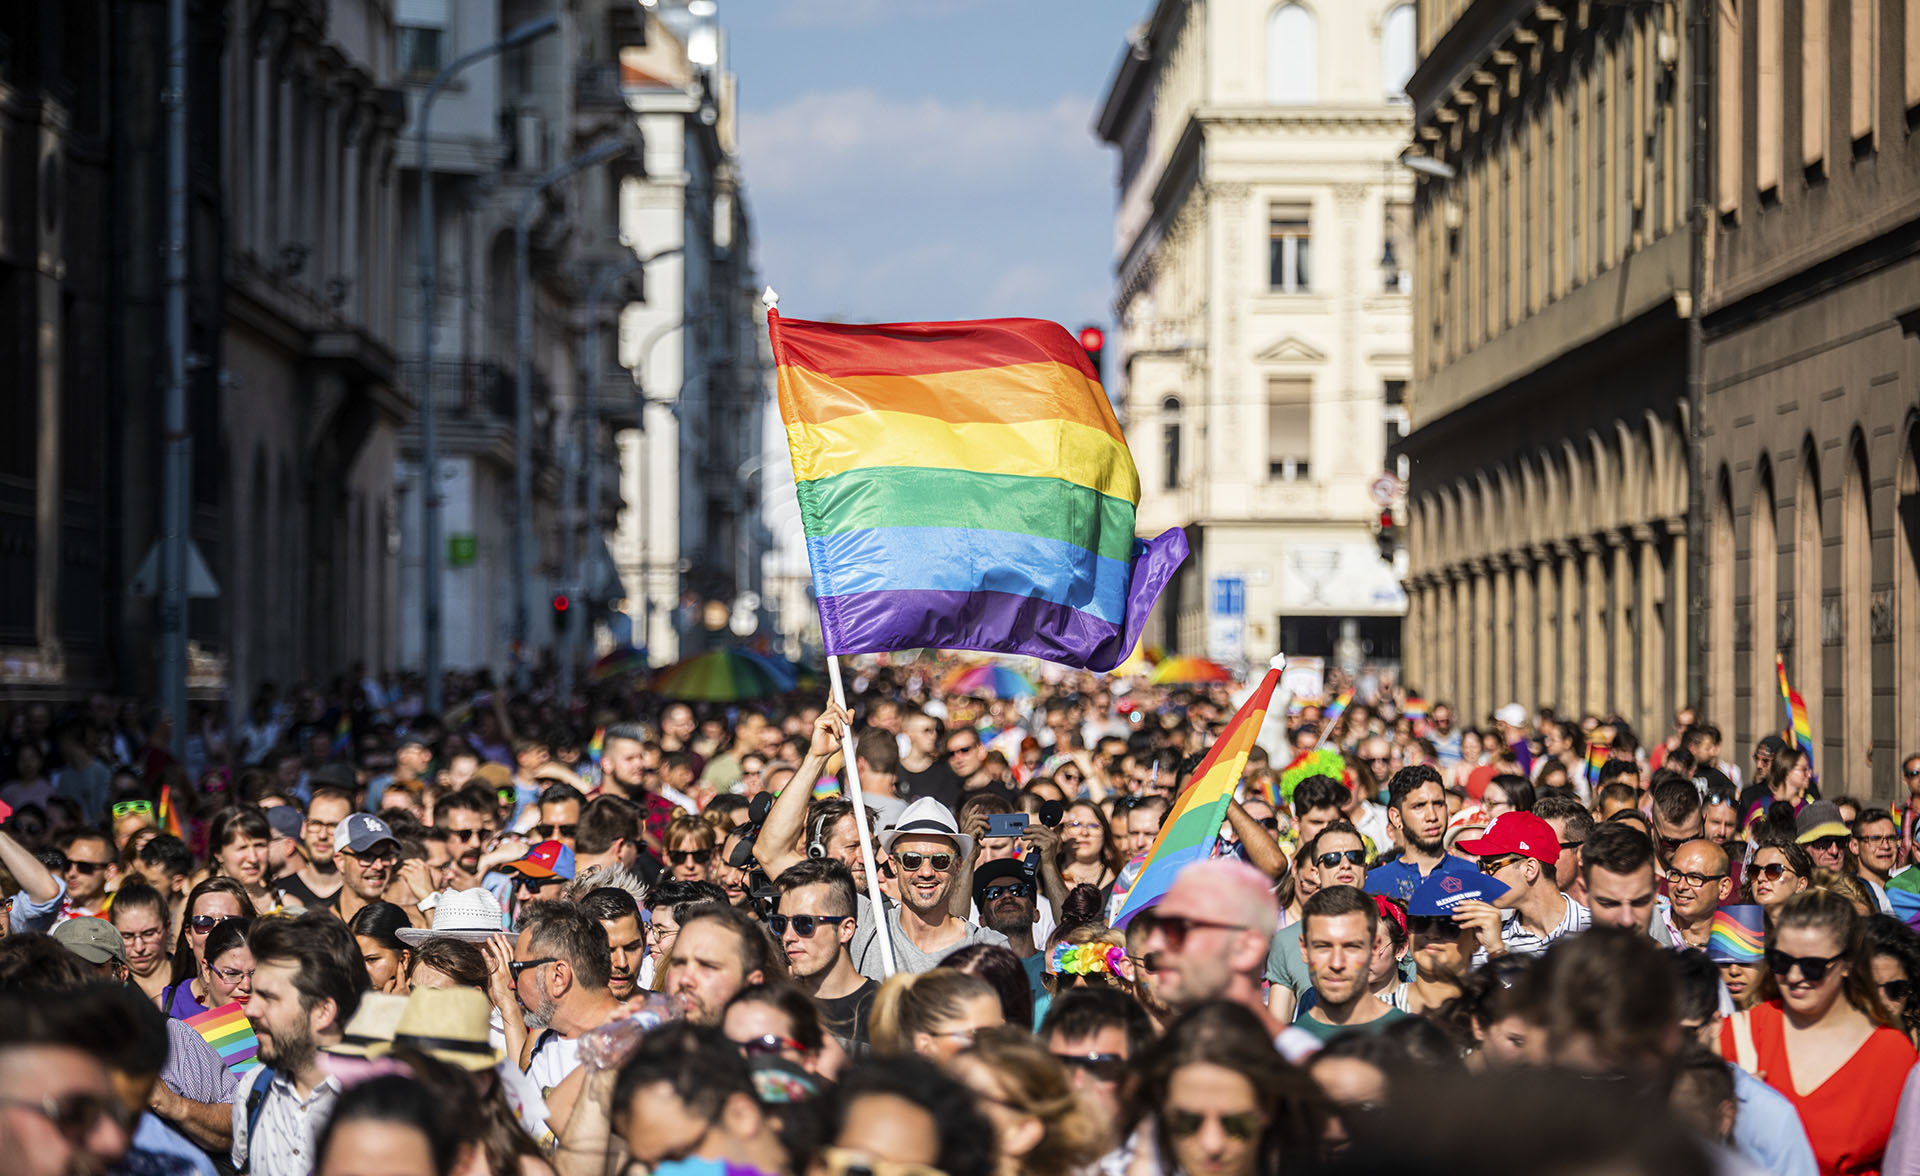 Eddig több mint 70 ezren írták alá a Budapest Pride petícióját